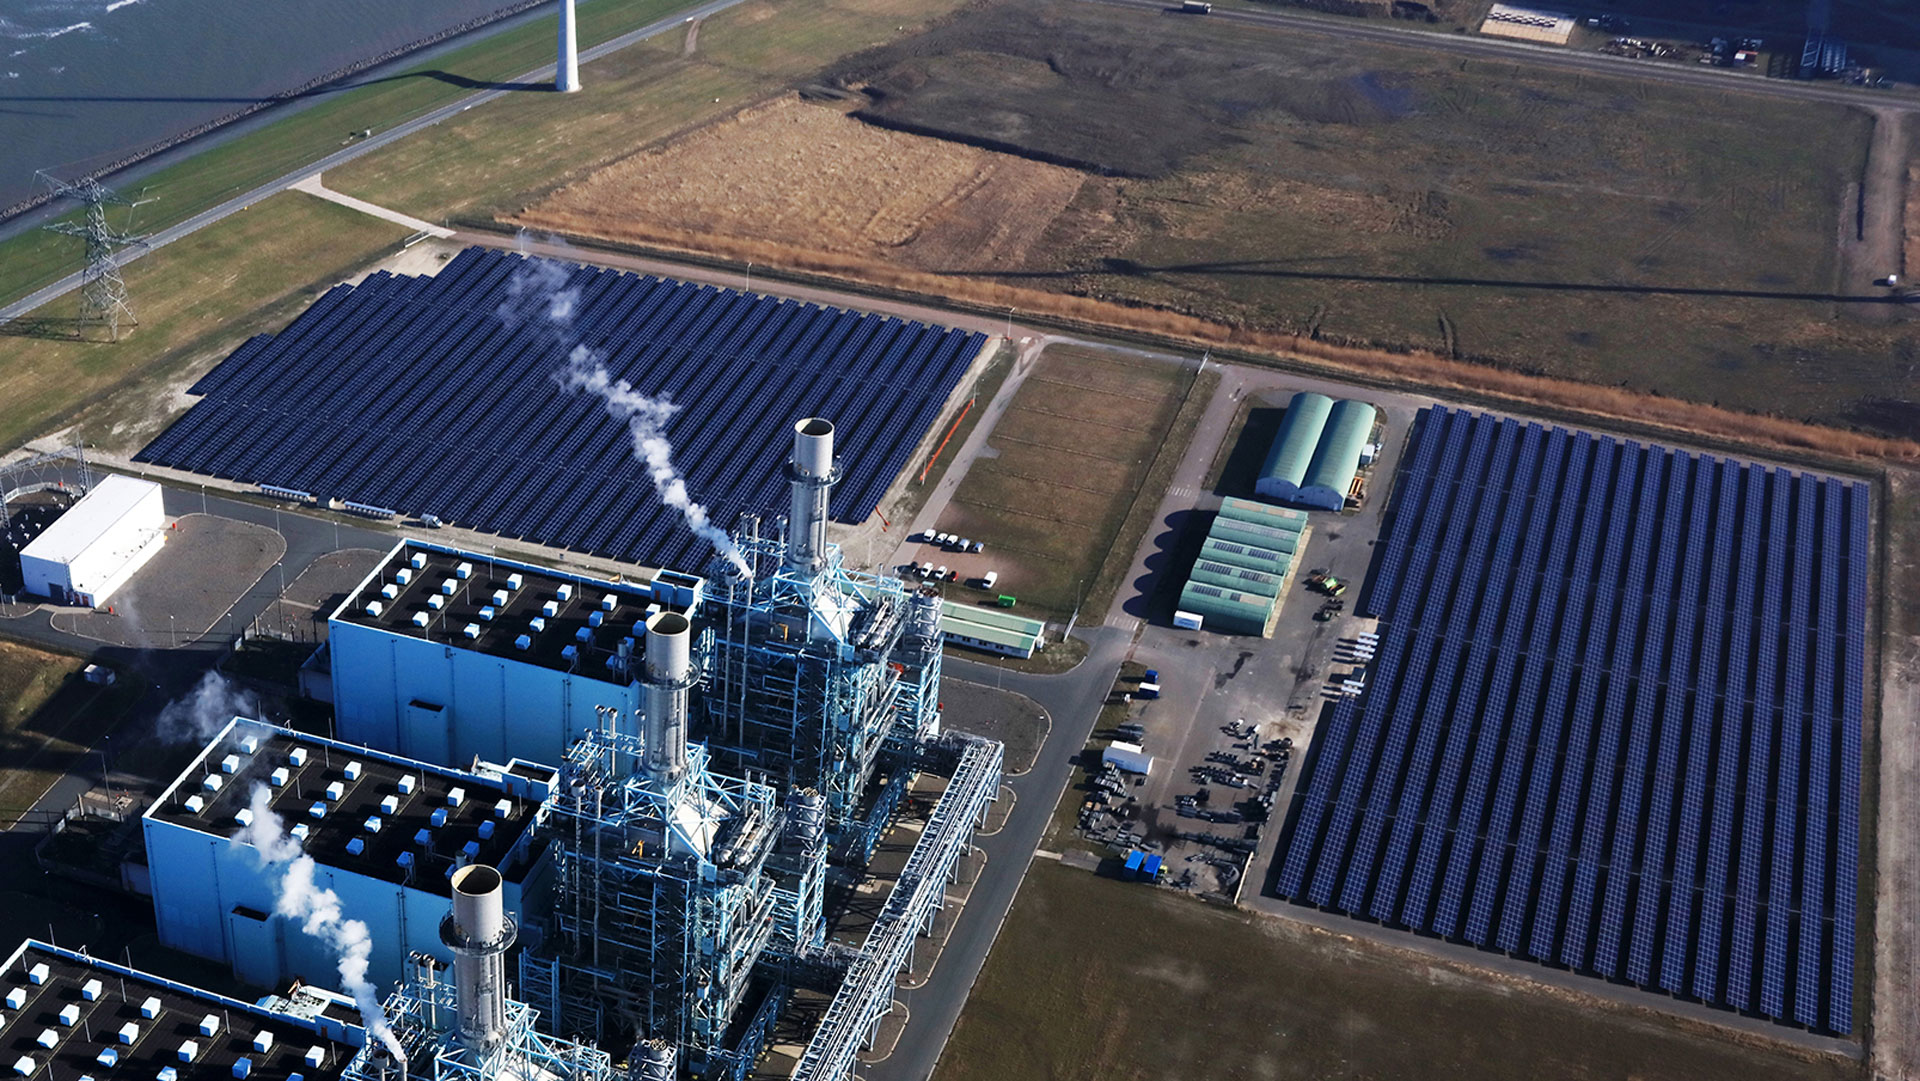 Vattenfalls hittills största solkraftpark vid Eemshaven i norra Nederländerna